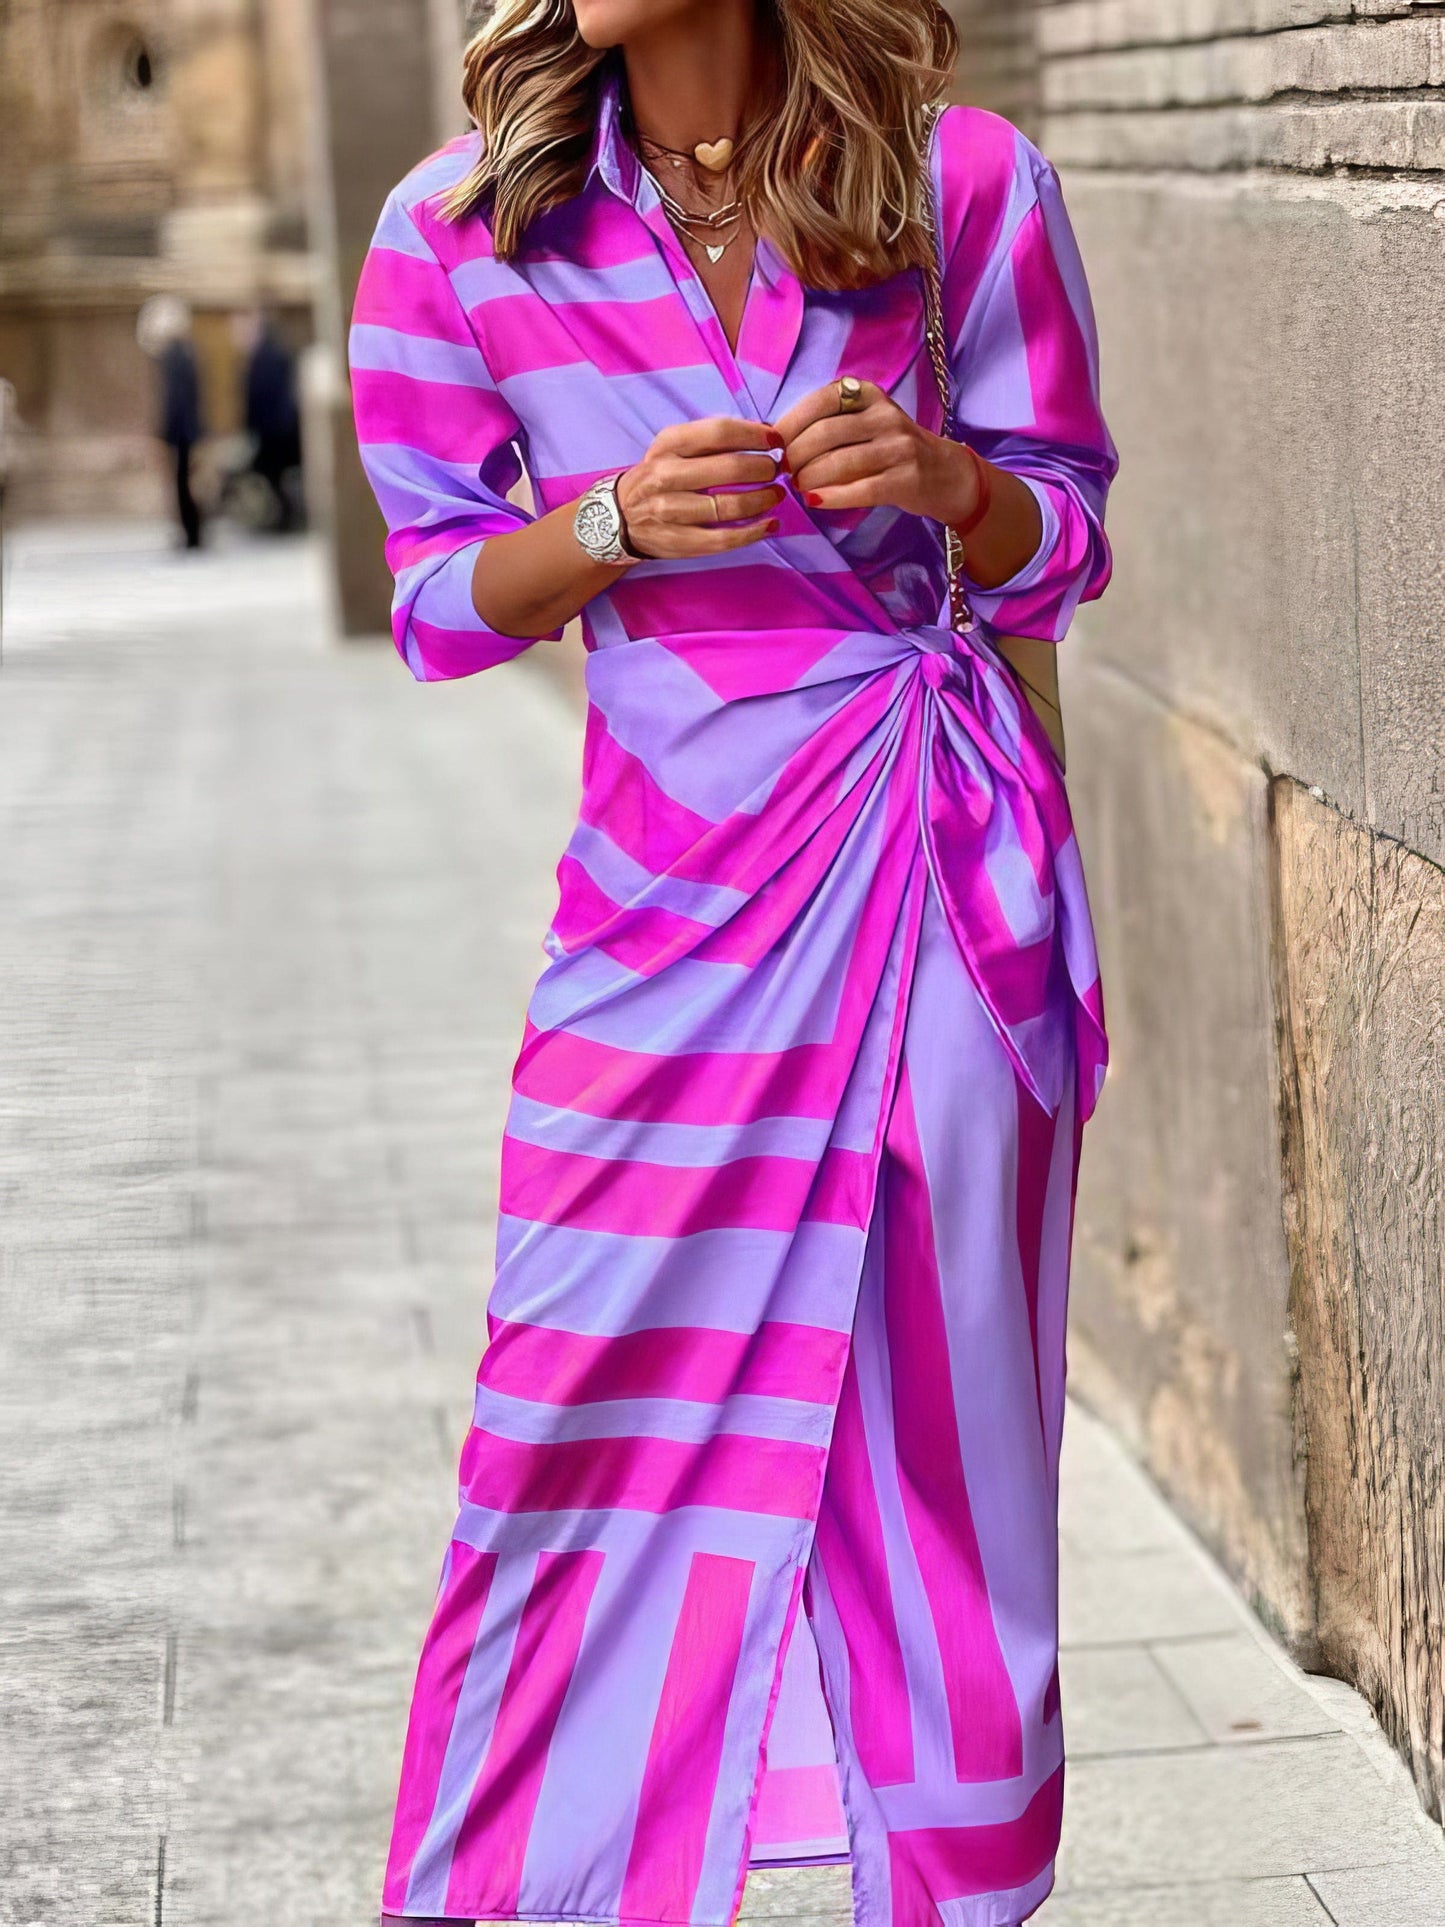 Lapel Striped Print Belted Long Sleeve Dress DRE2205054089PURS Purple / 2 (S)